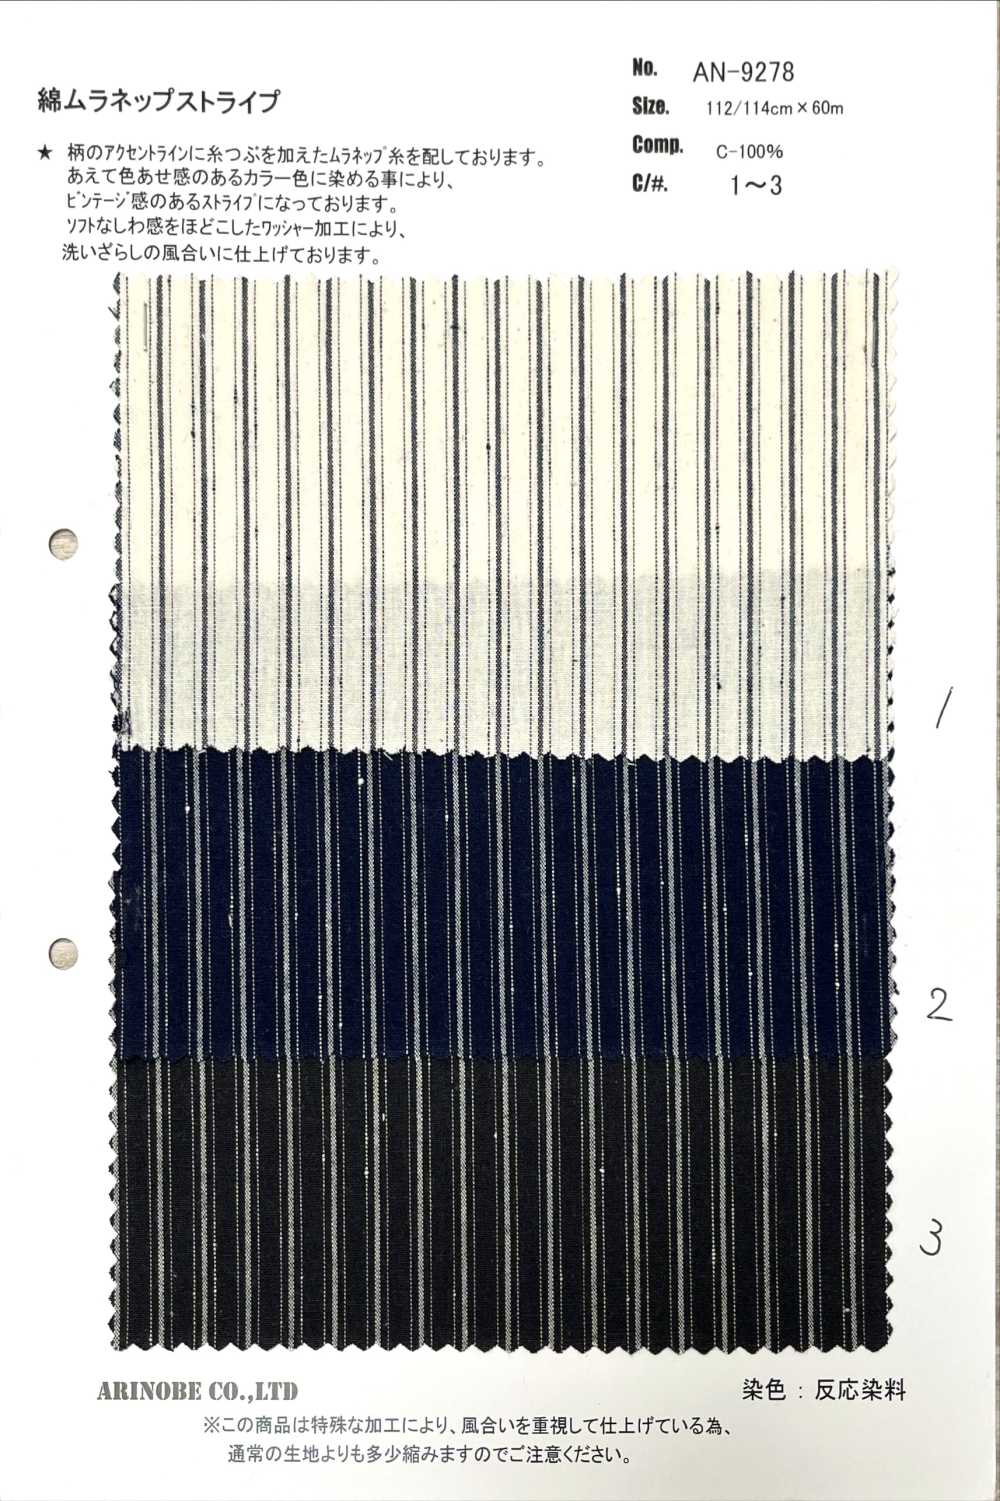 AN-9278 Listra De Algodão Muranep[Têxtil / Tecido] ARINOBE CO., LTD.